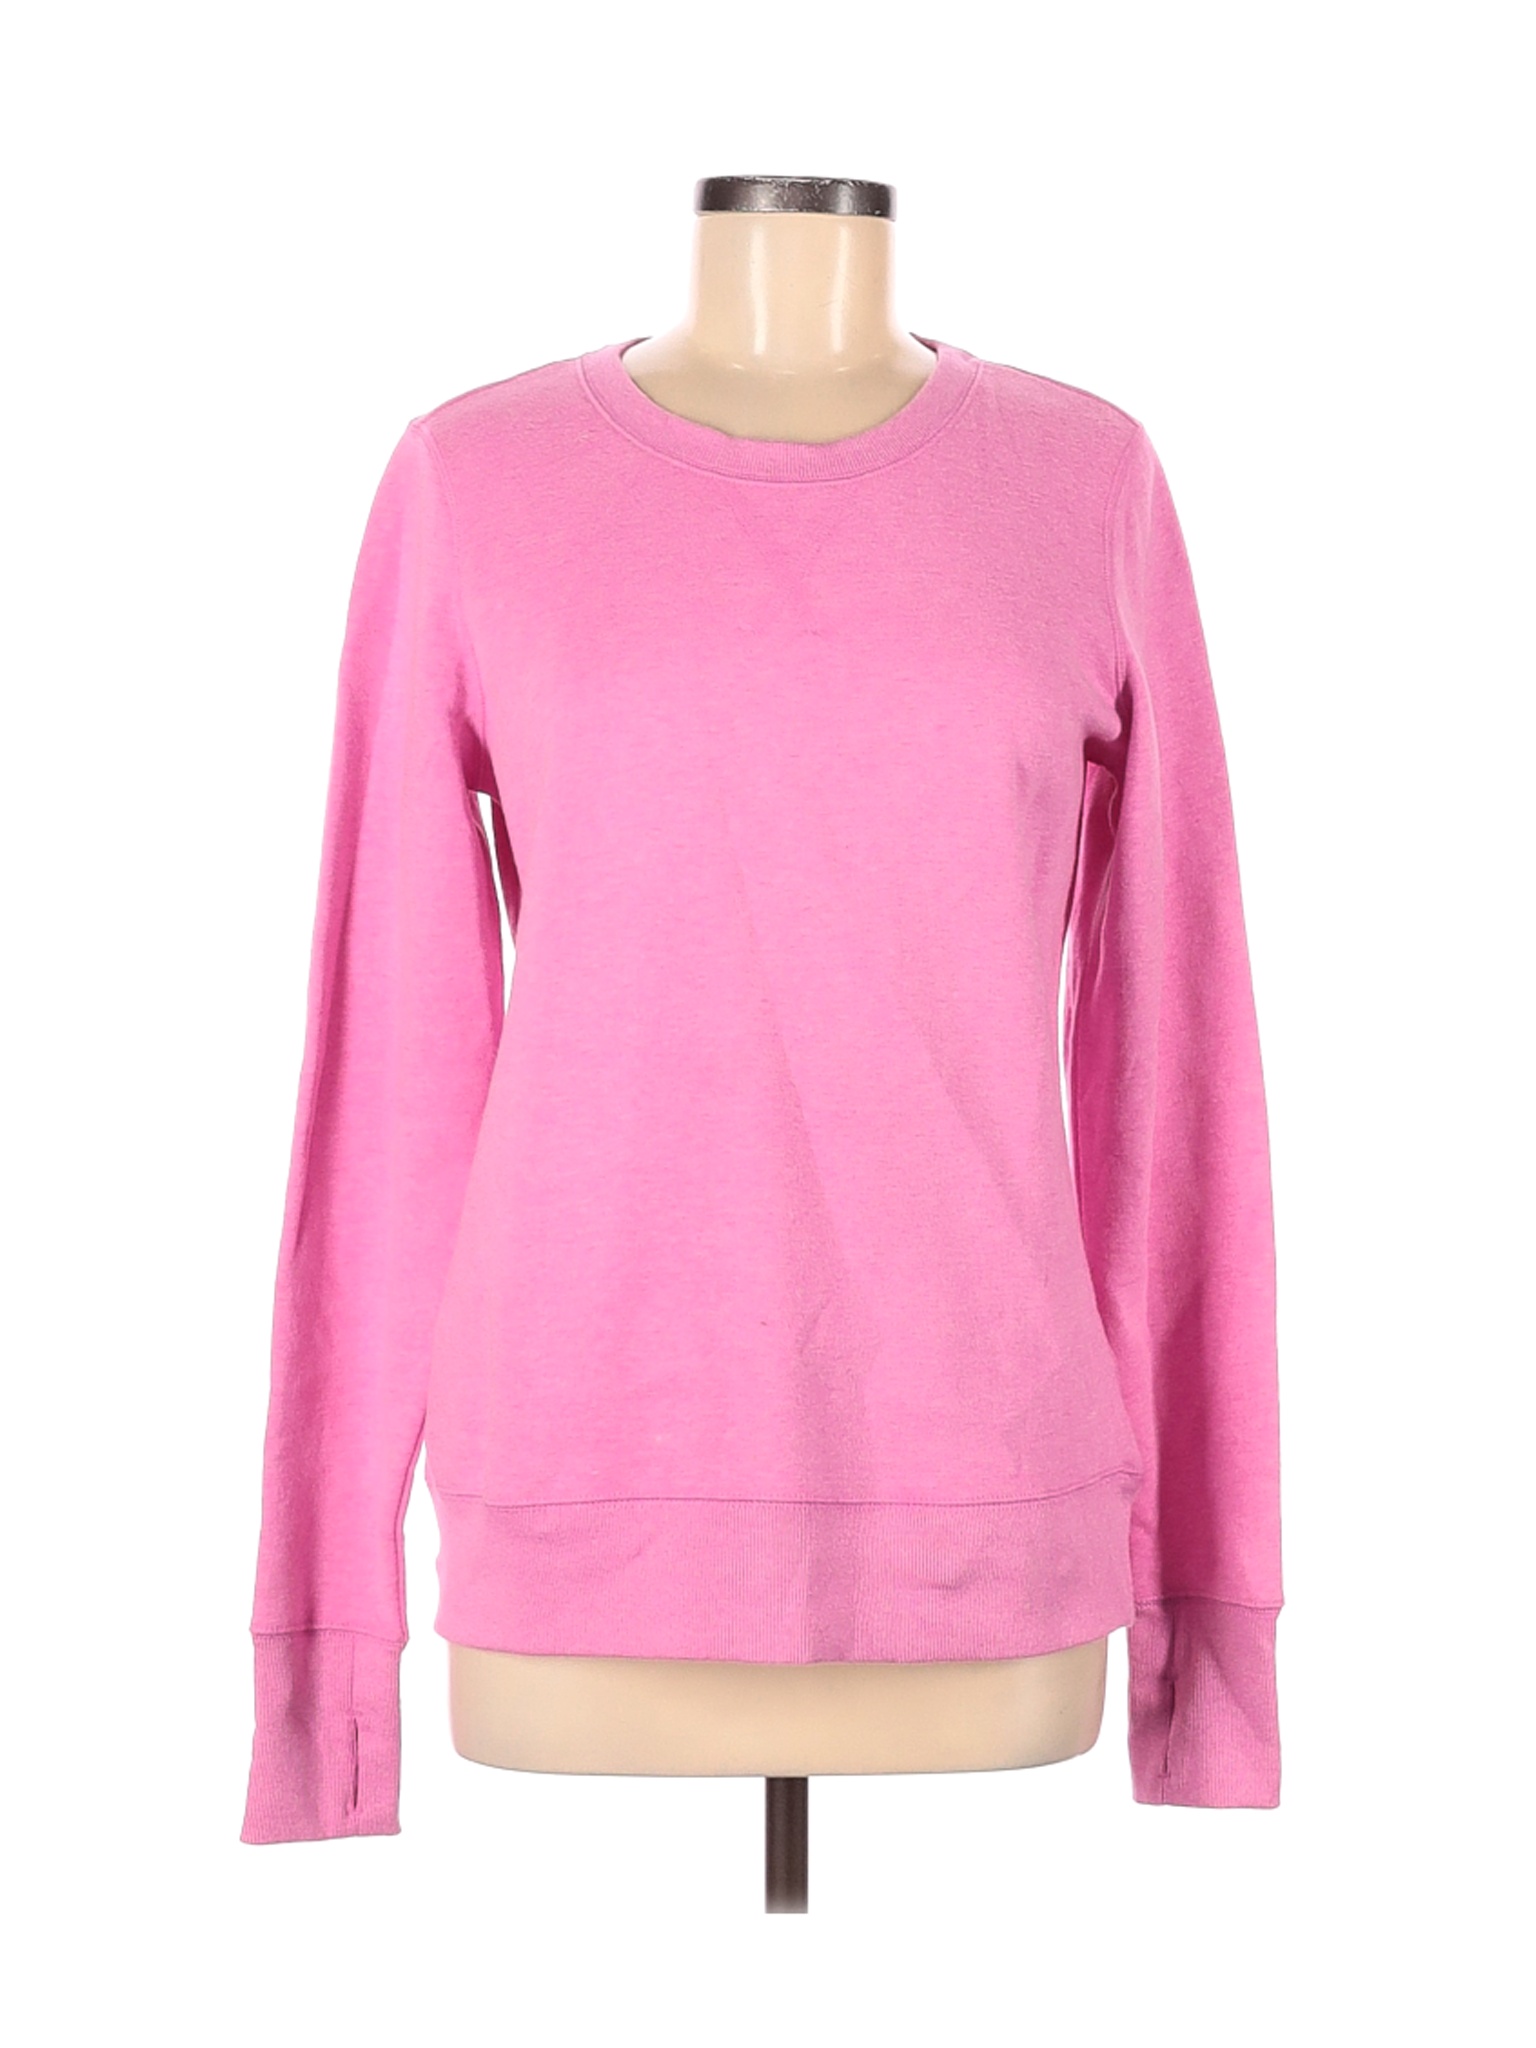 Tek Gear Women Pink Sweatshirt M | eBay